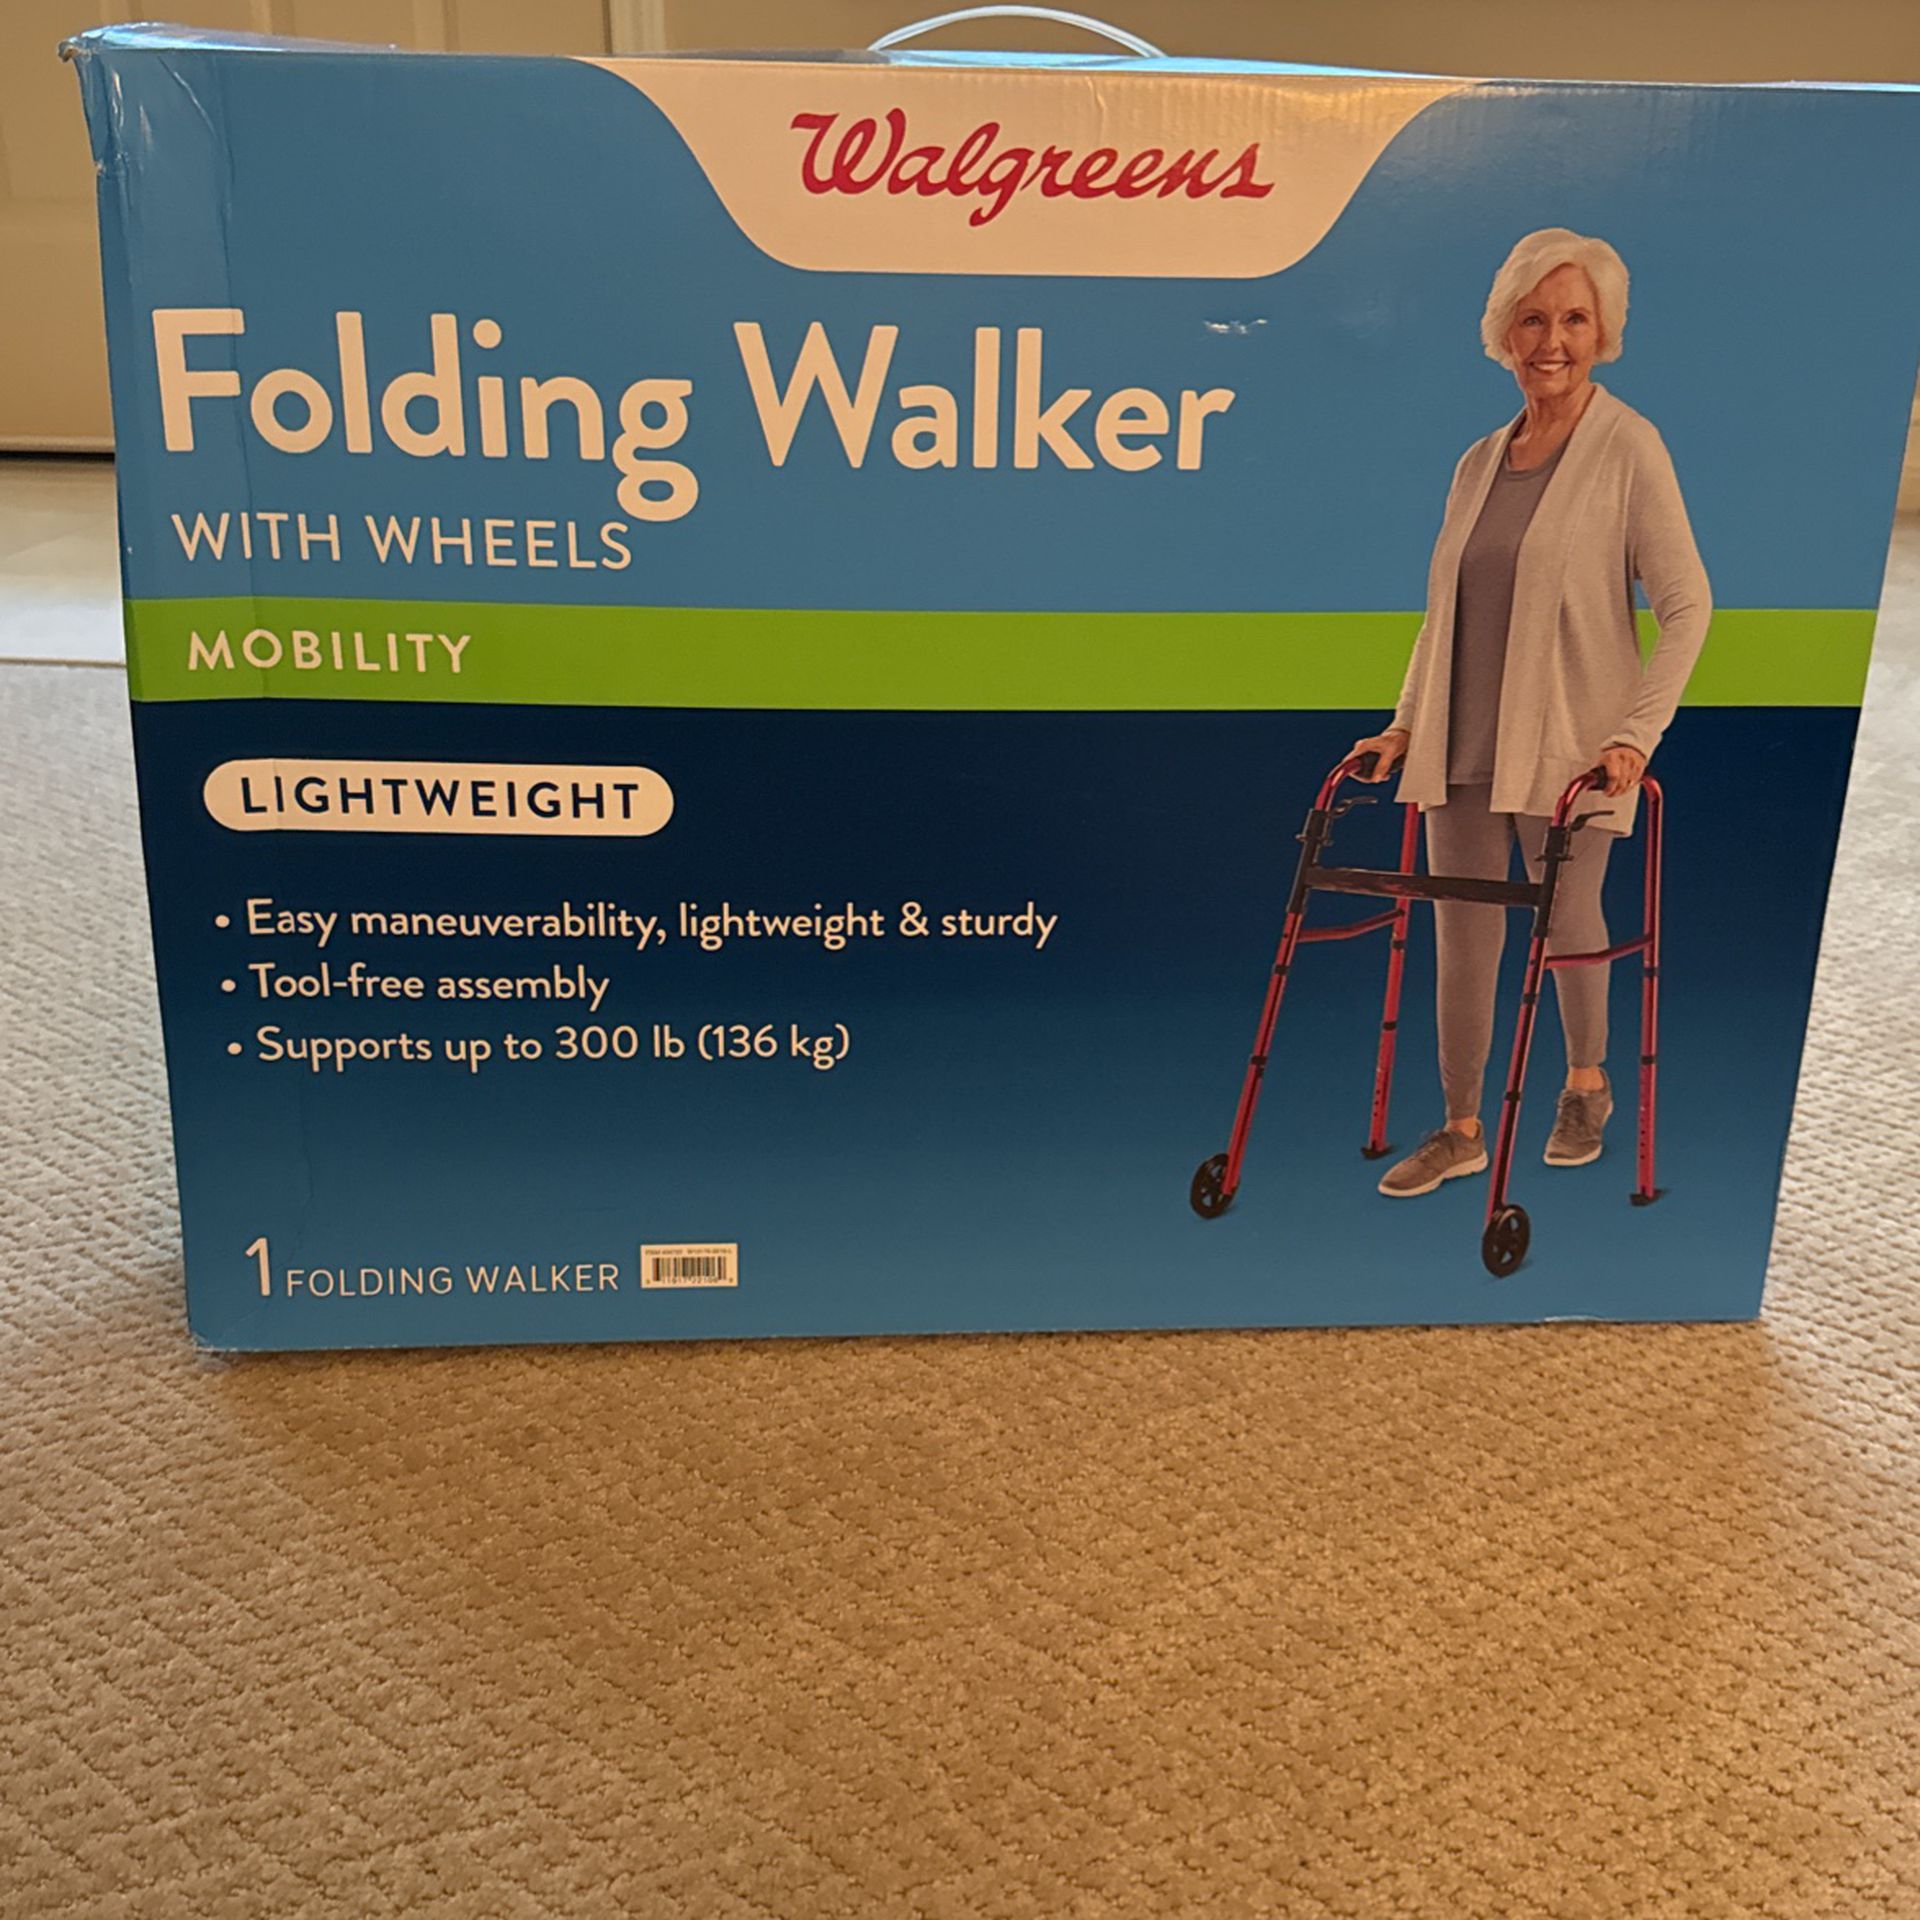 Folding walker with wheels (Walgreens)